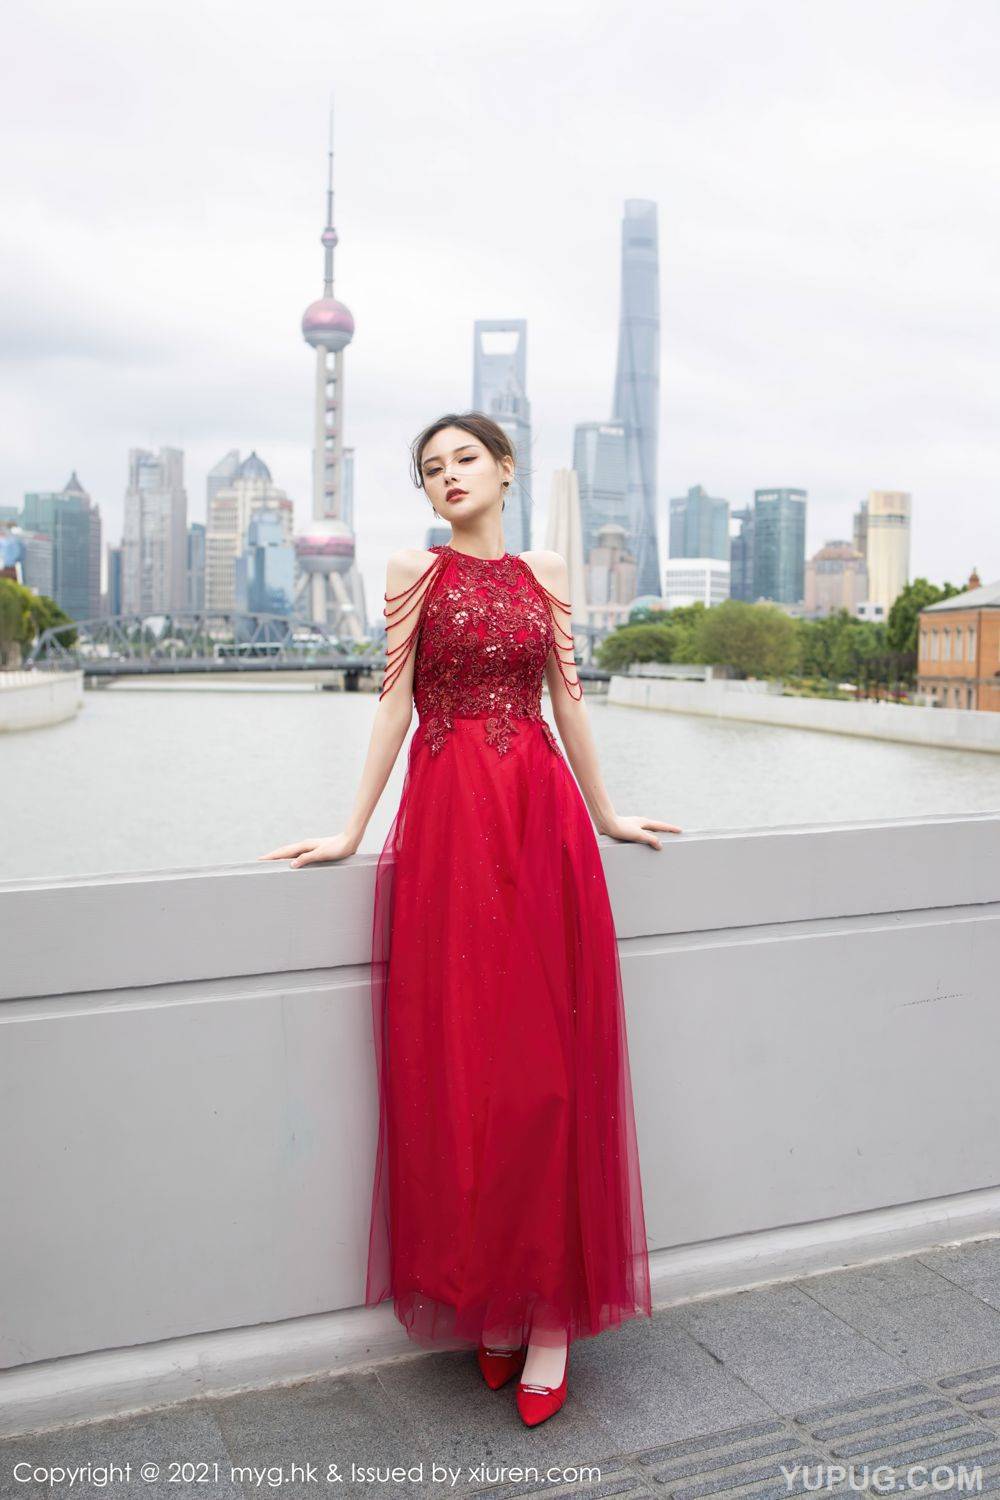 Богиня Сяо Си Цзюйджу в красном платье очаровывает людей.